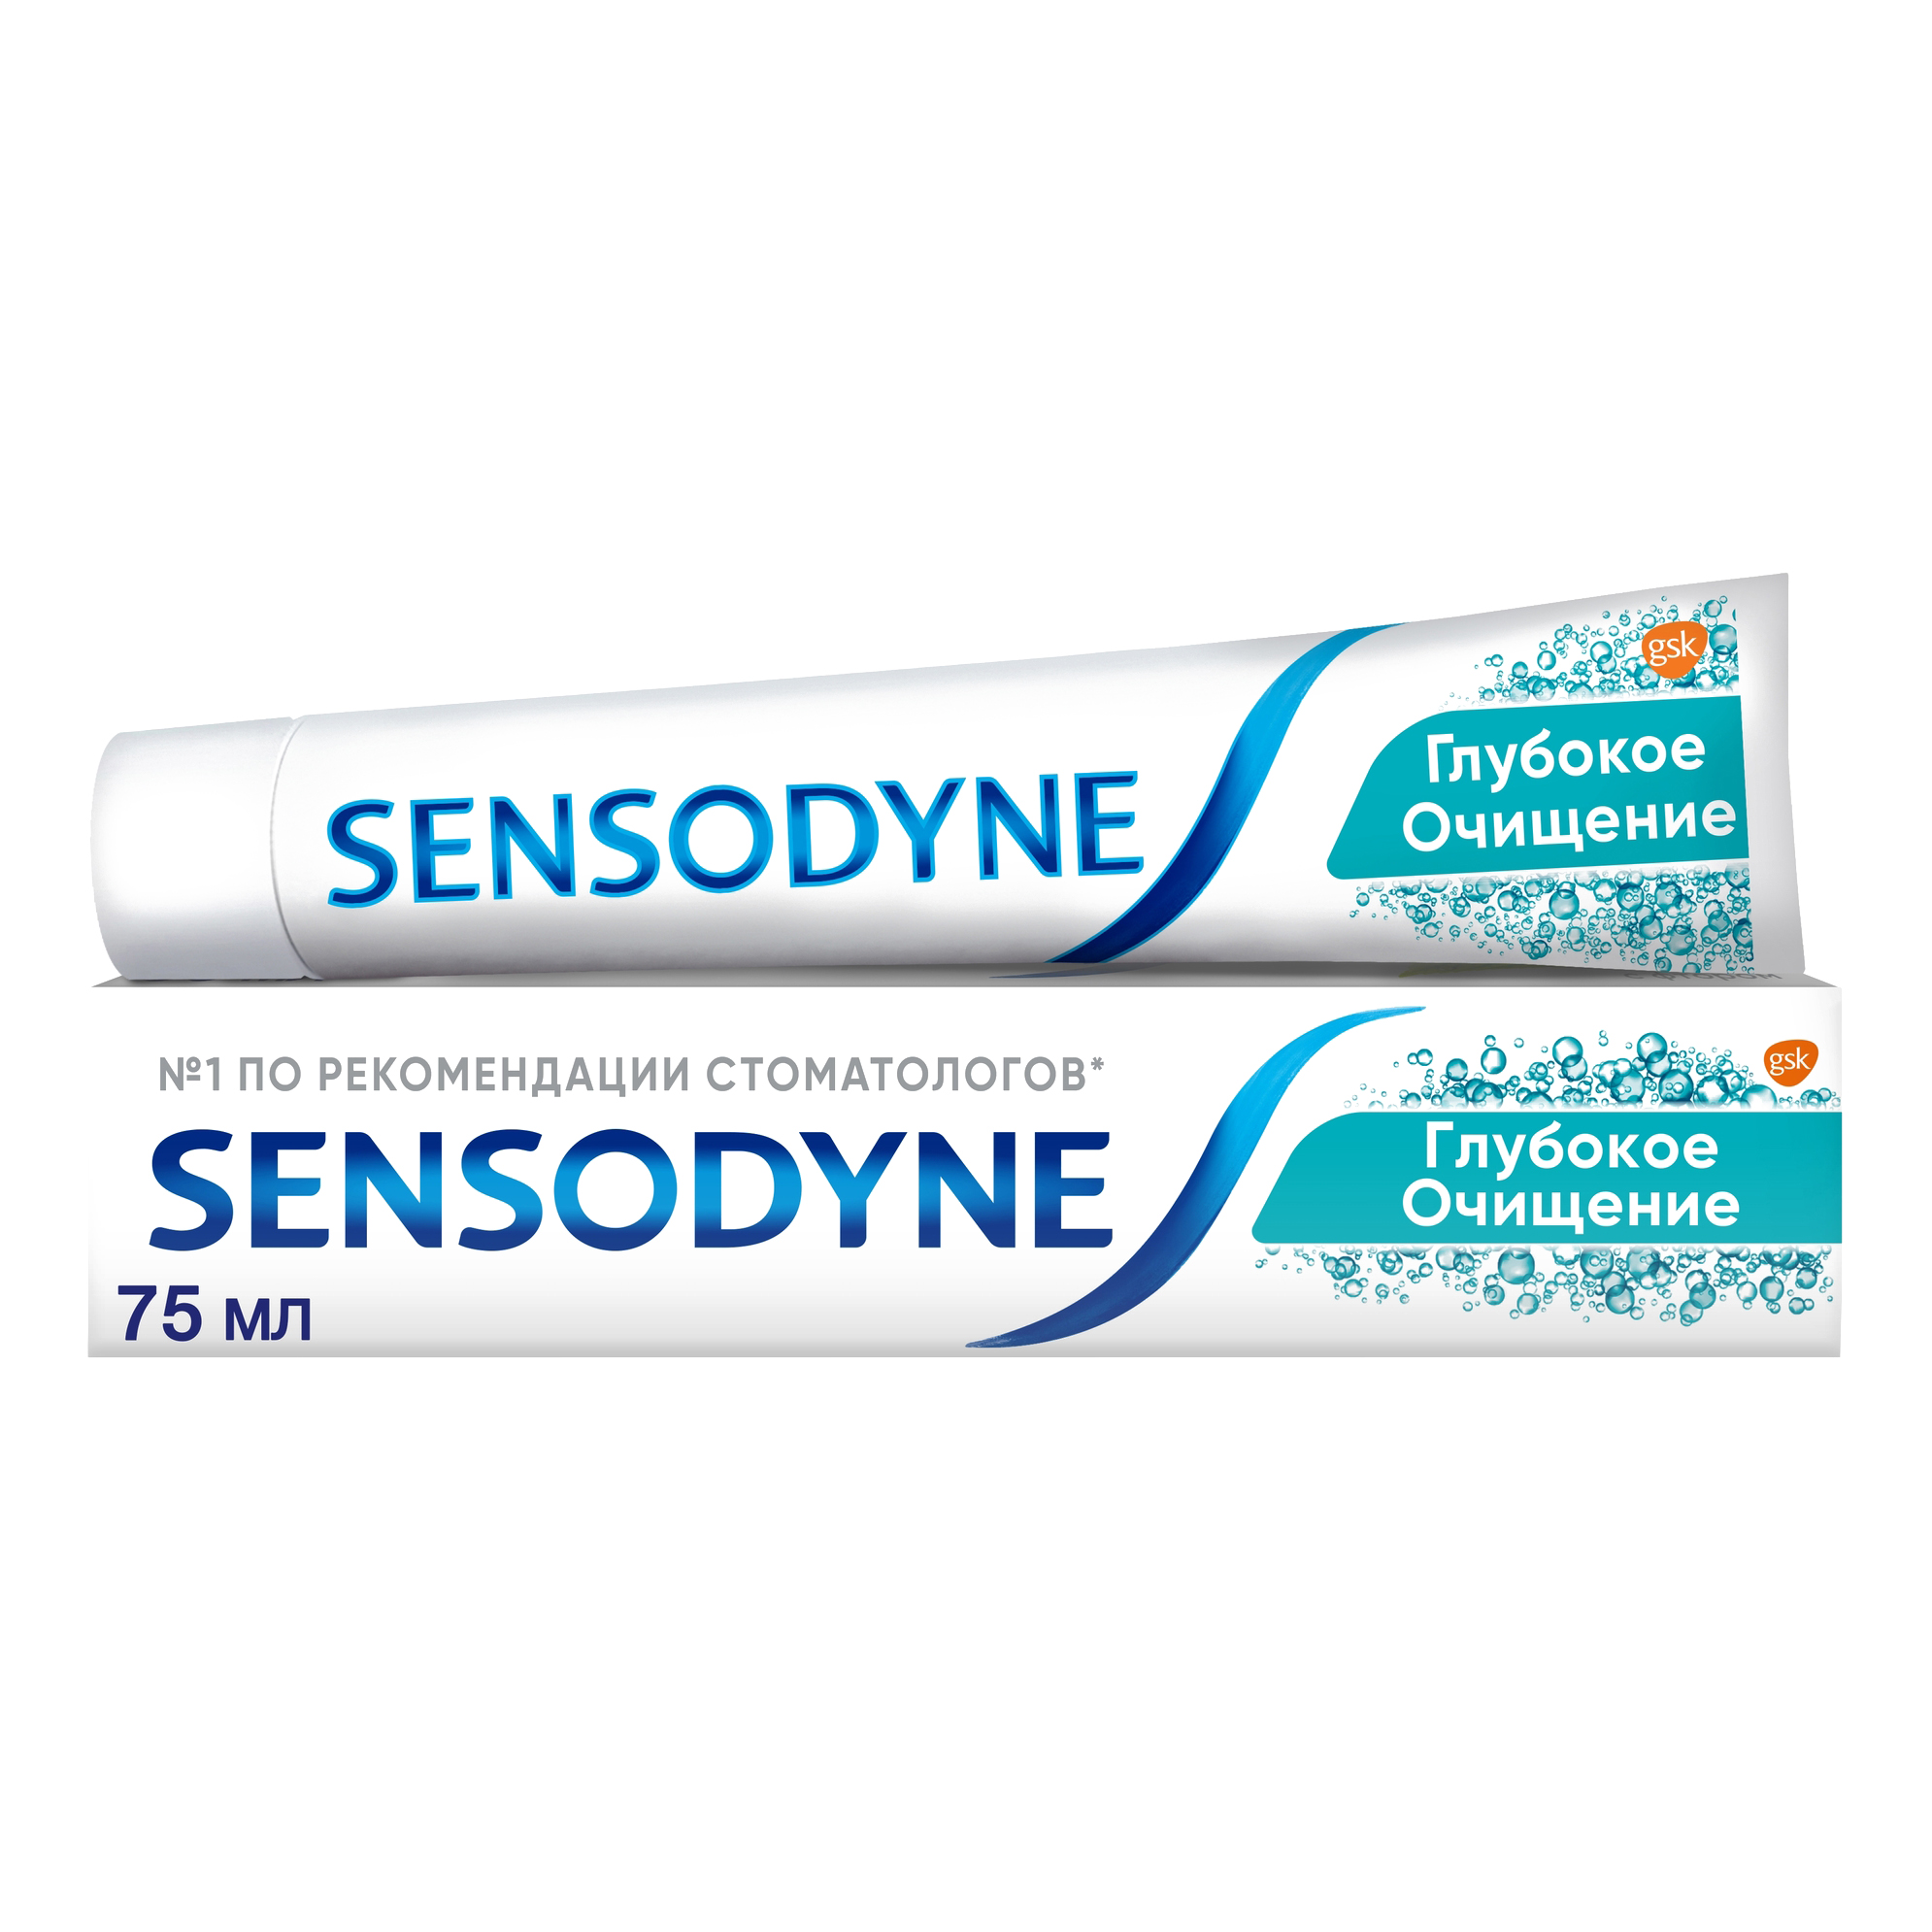 Зубная паста Sensodyne Глубокое Очищение для чувствительных зубов с фтором, 75 мл зубная паста sensodyne глубокое очищение 75мл 2 штуки